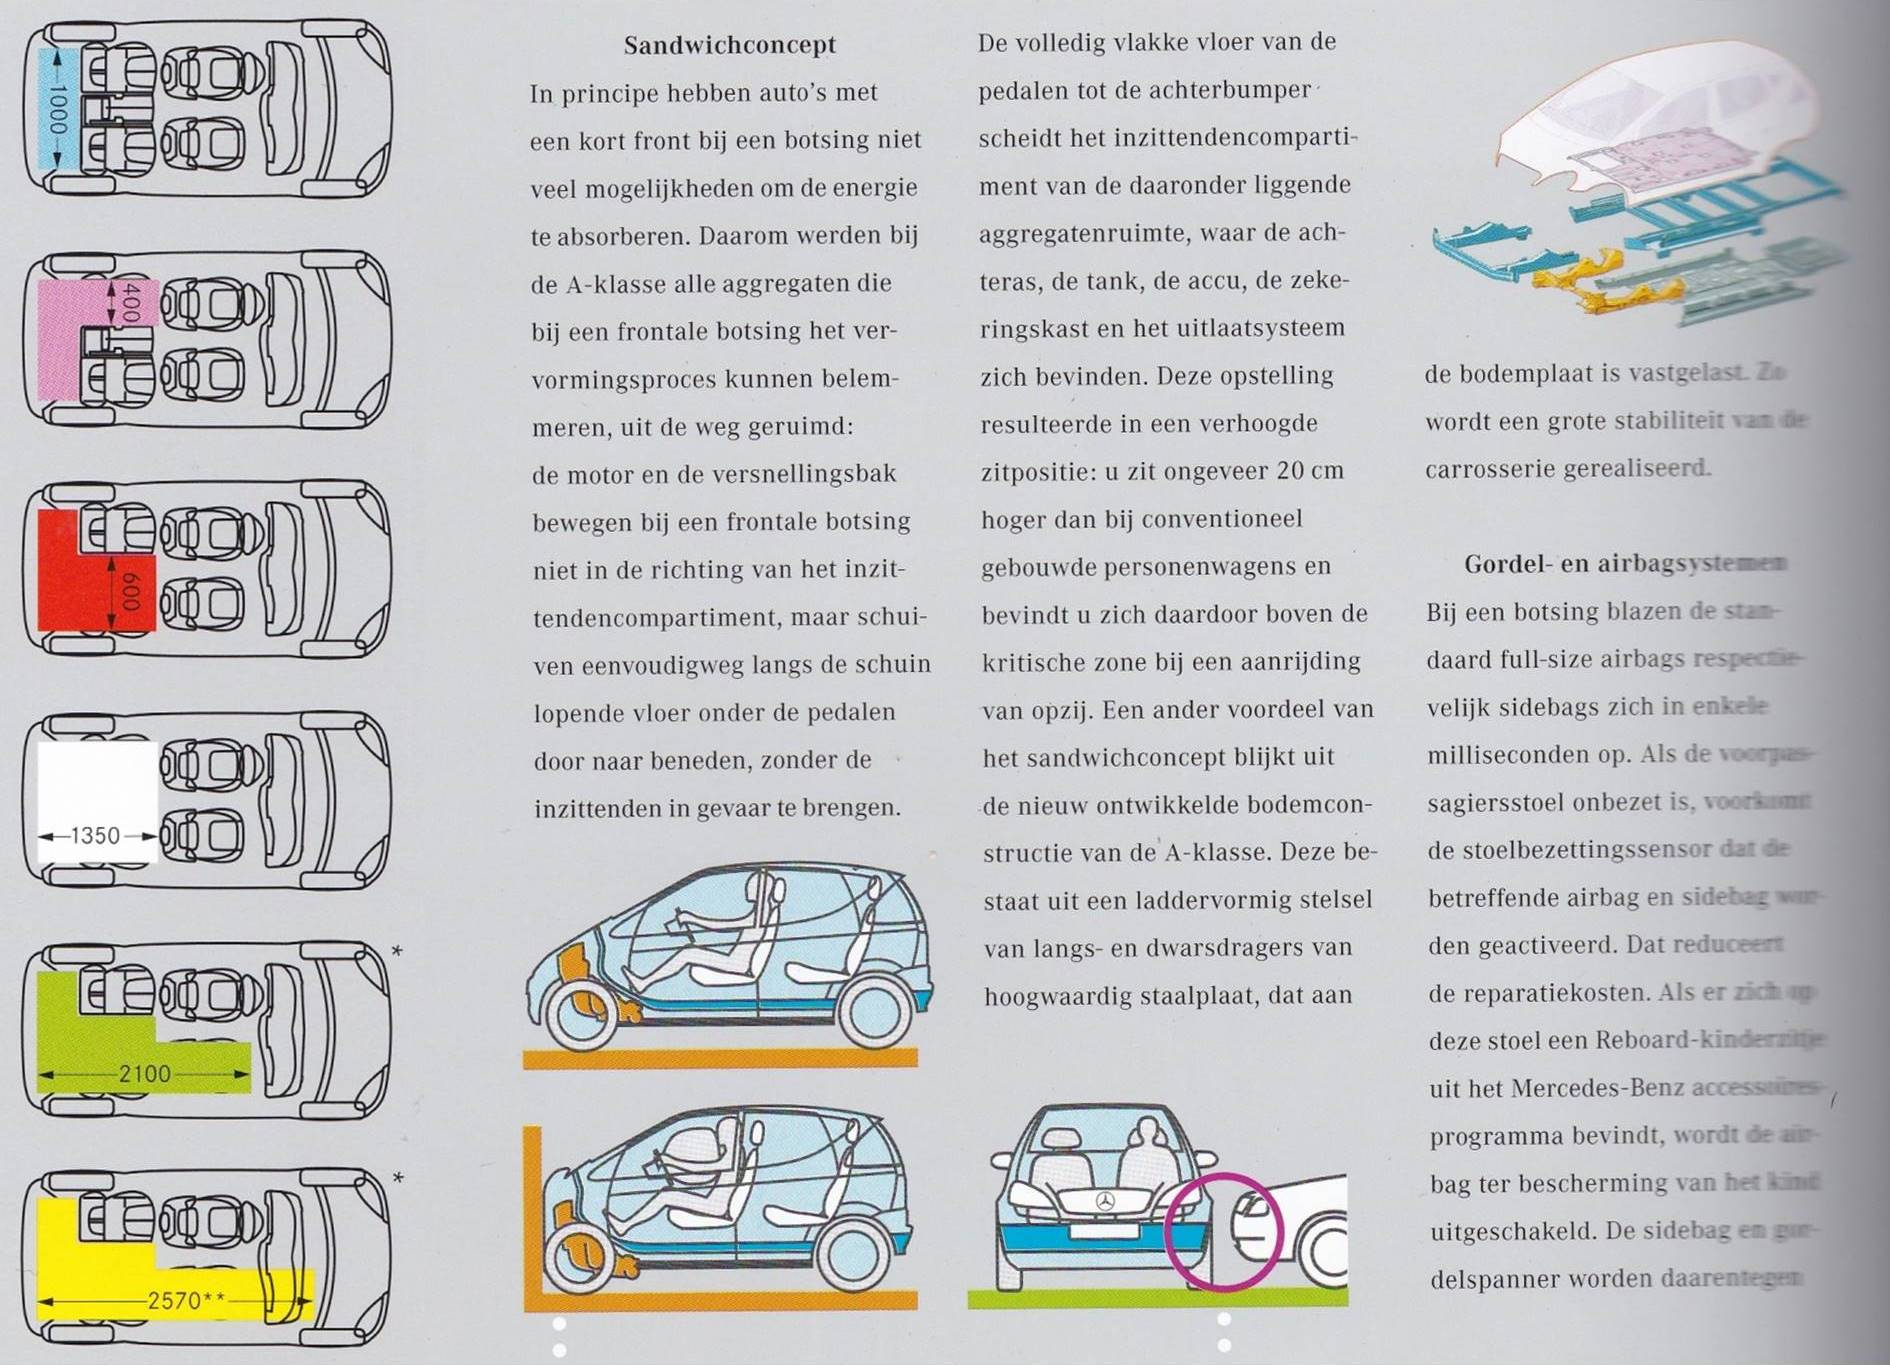 Fragmenten uit een brochure met tekst en schematische afbeeldingen